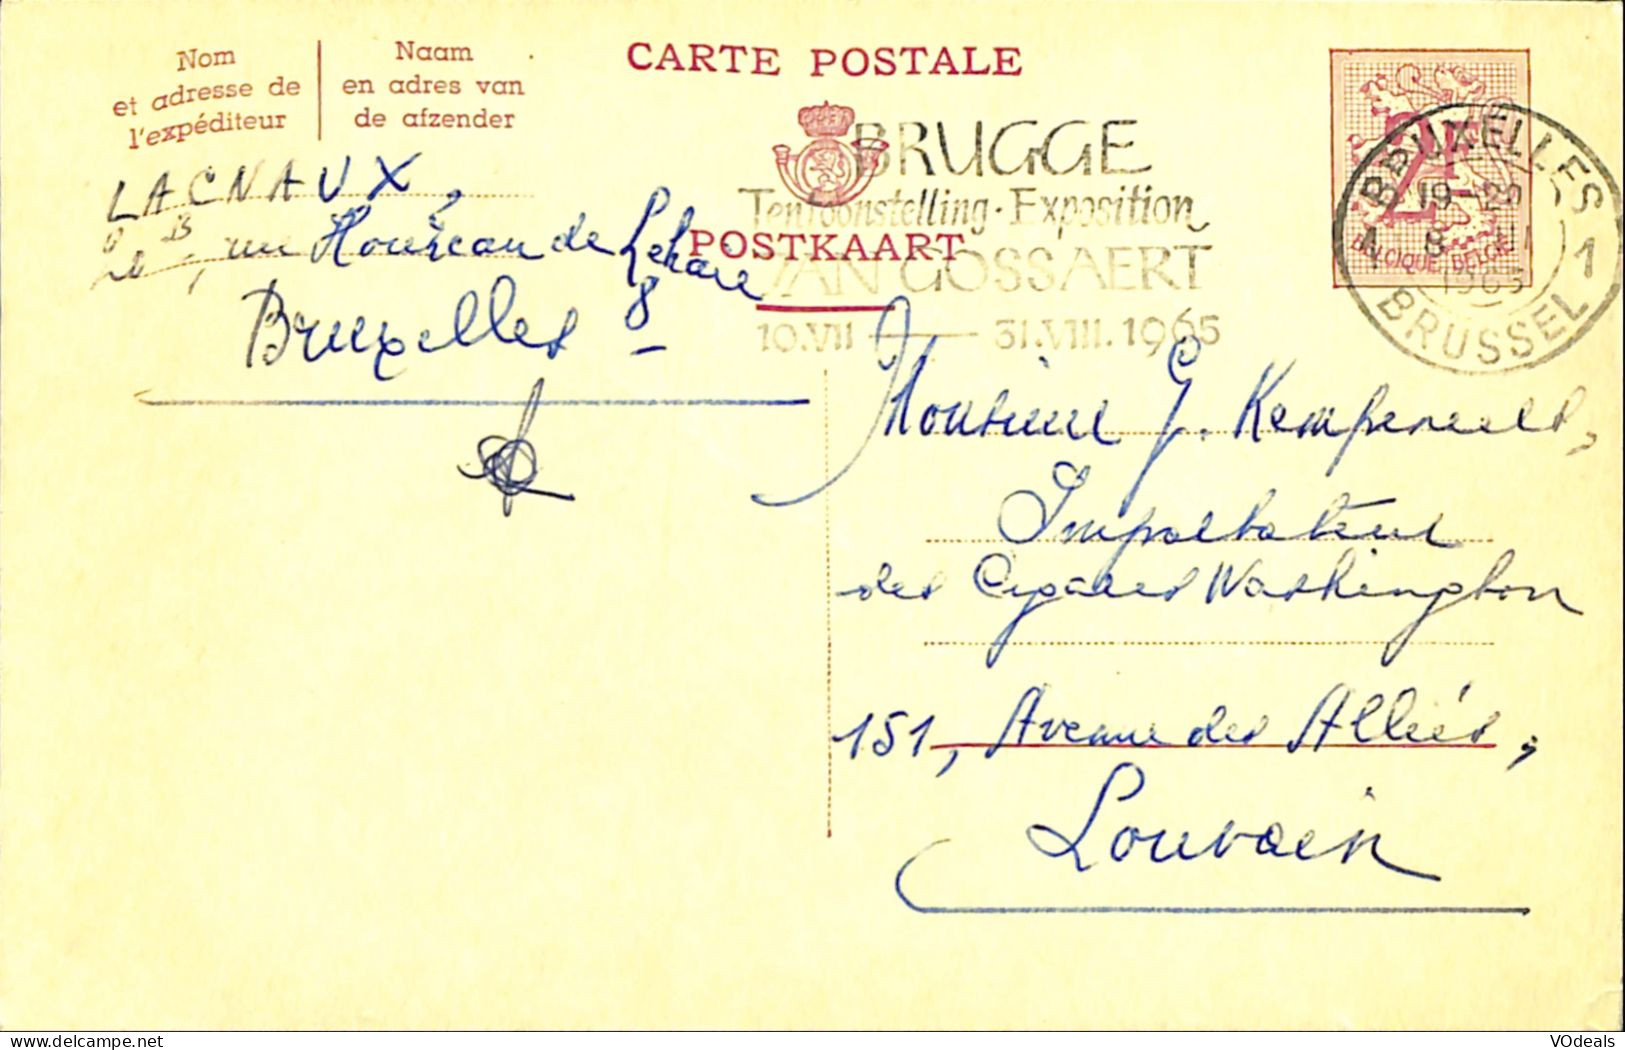 Belgique - Carte Postale - Entier Postal - 1965 - Bruxelles à Louvain - 2 Francs - Postkarten 1951-..